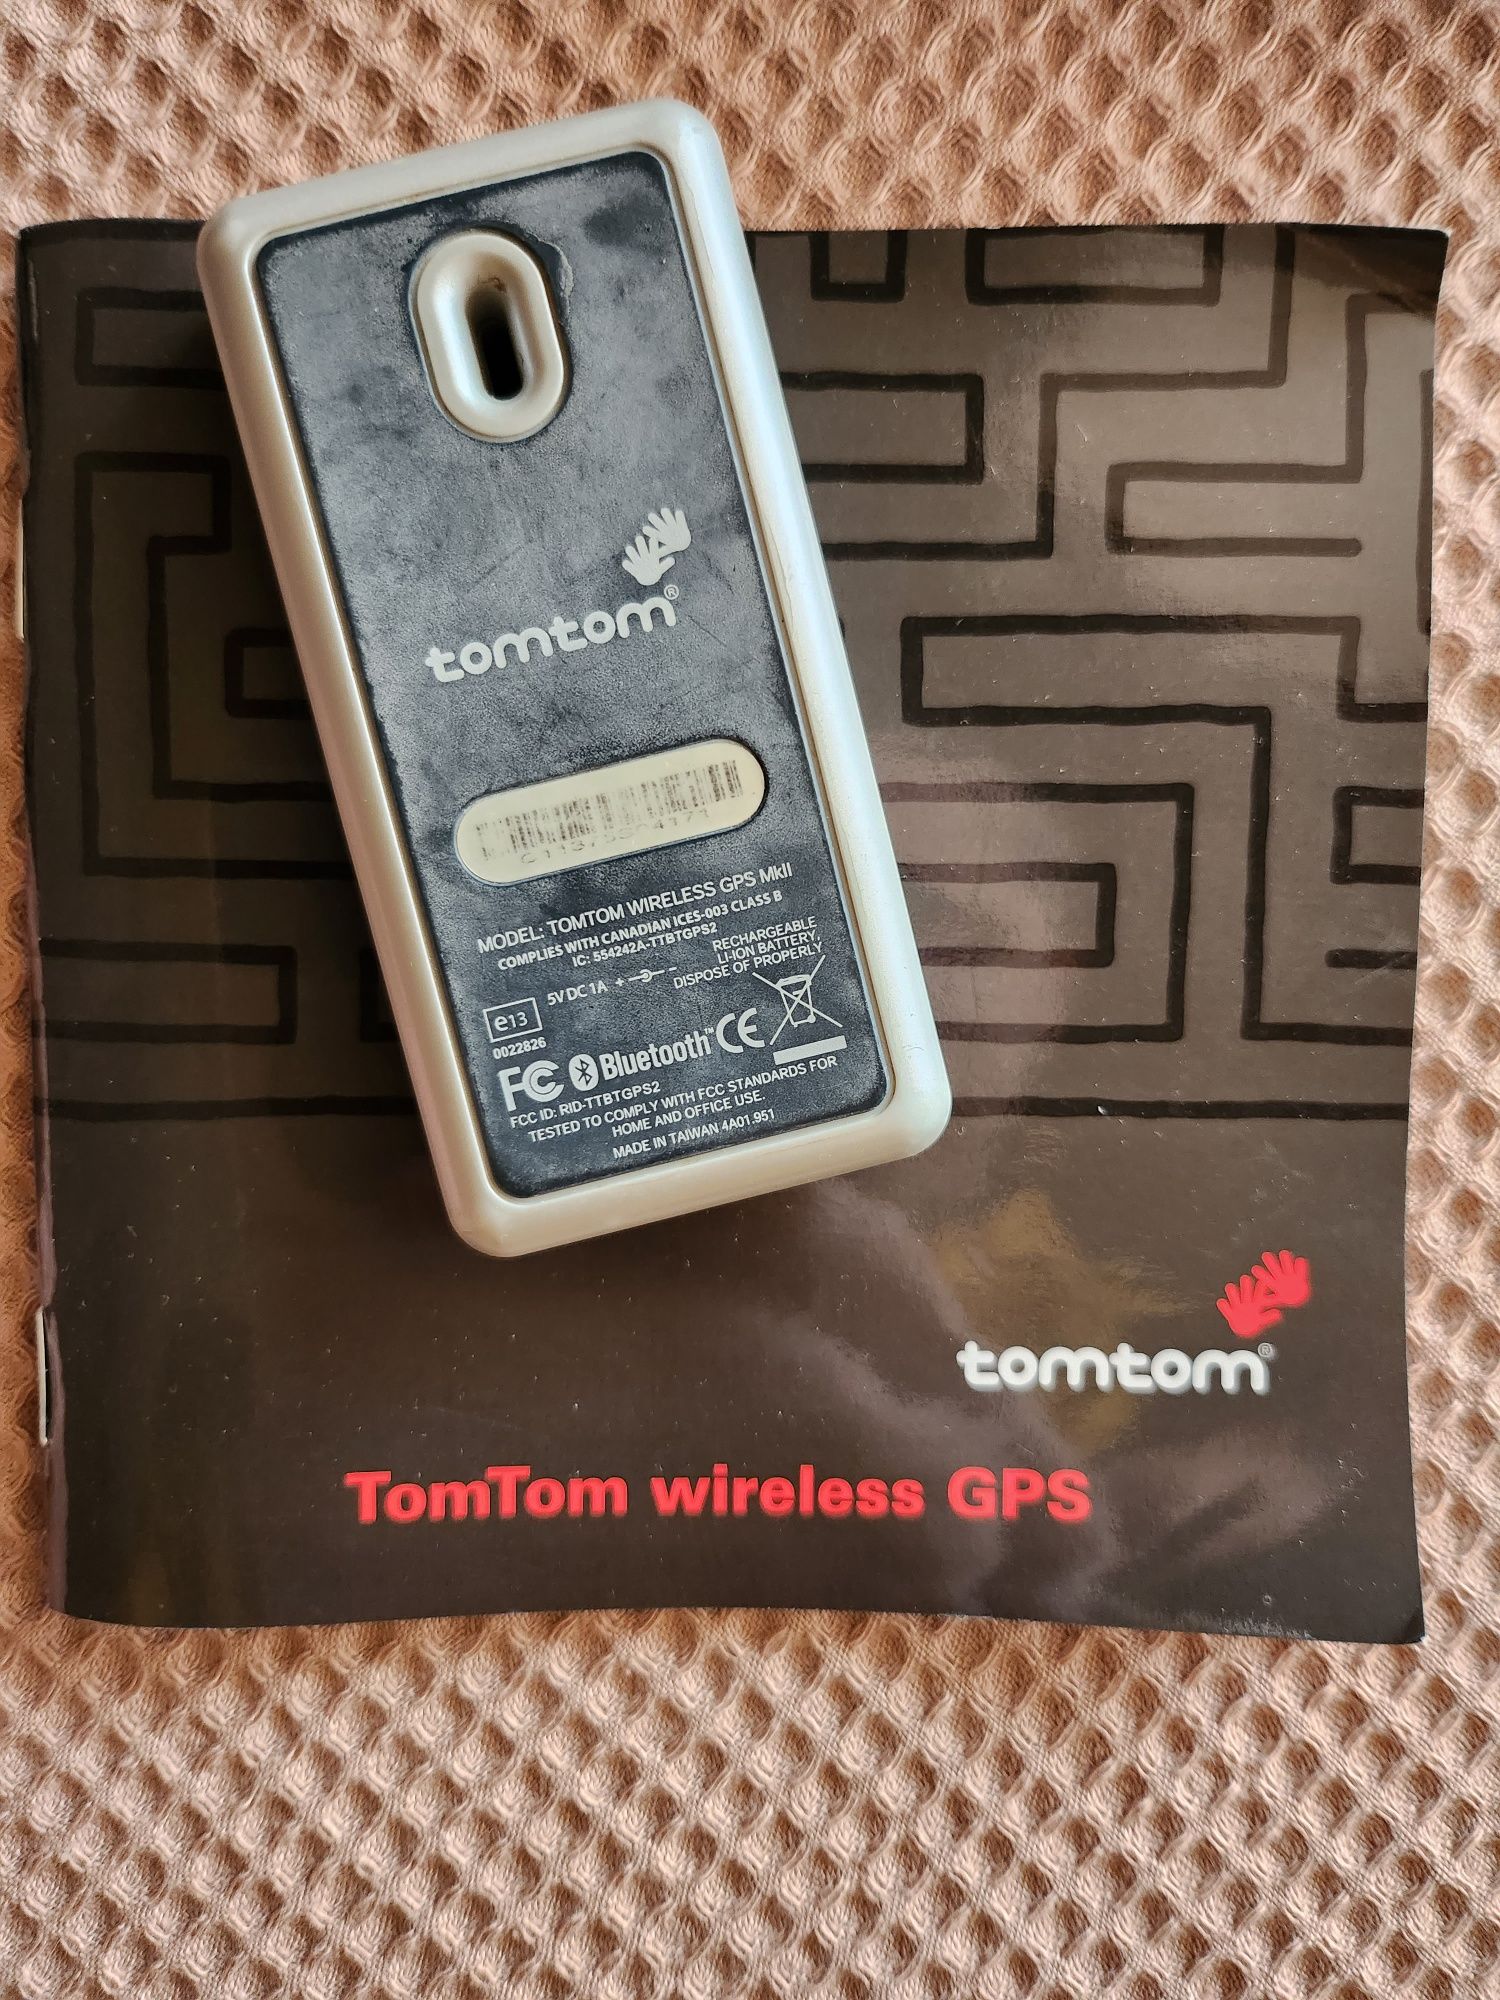 Gps wireless Tom Tom